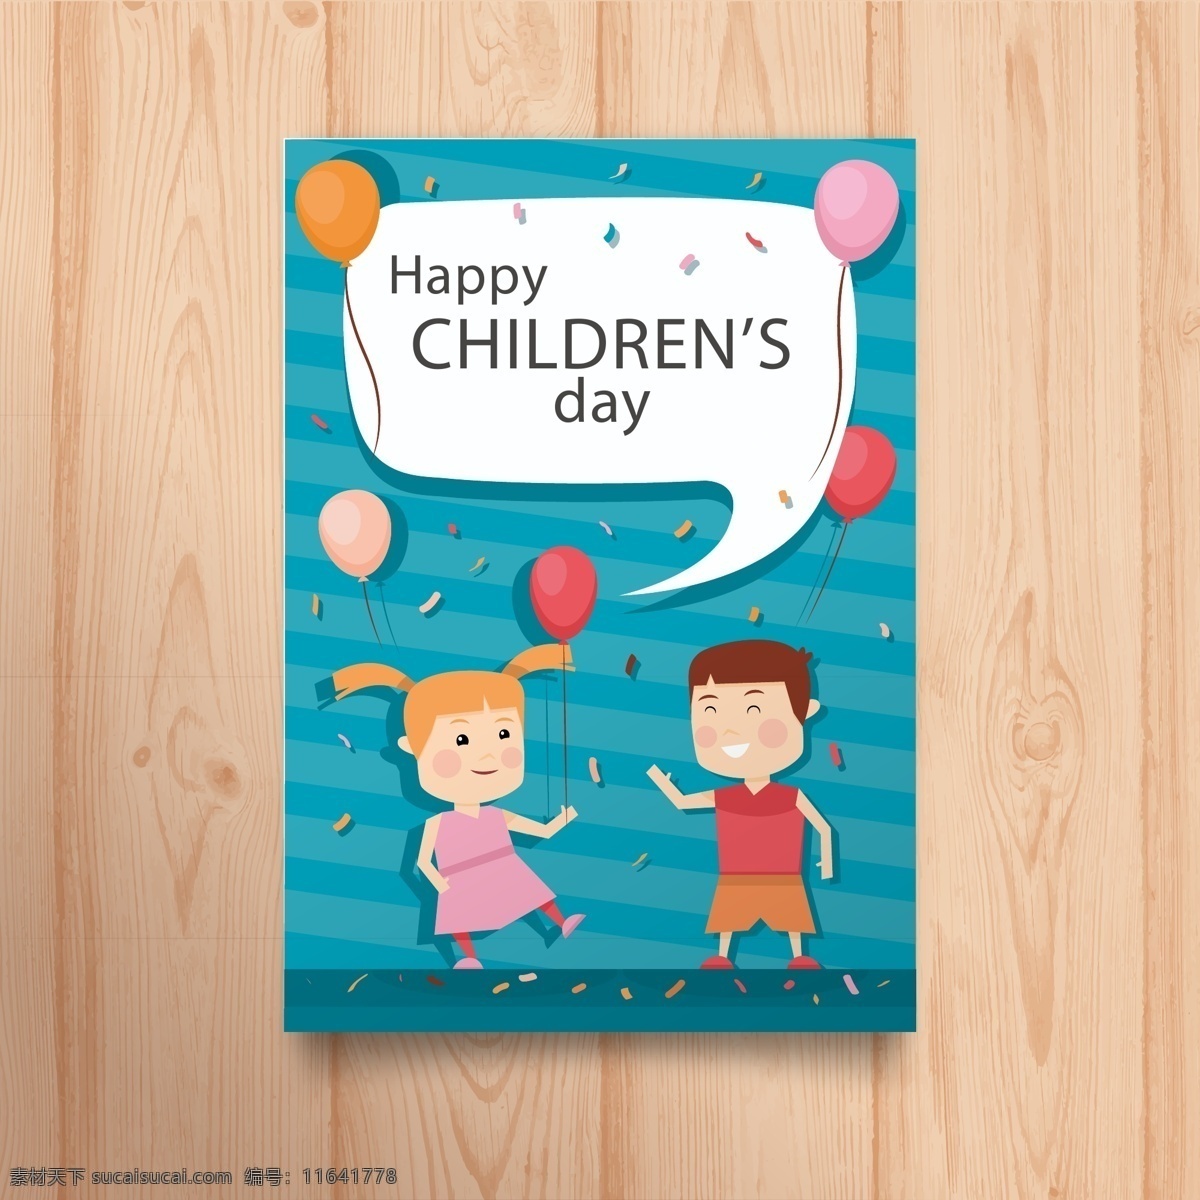 可爱 男孩 女孩 儿童节 贺卡 矢量 气球 彩色纸屑 happy childrens day 祝福卡 孩子 名片卡片